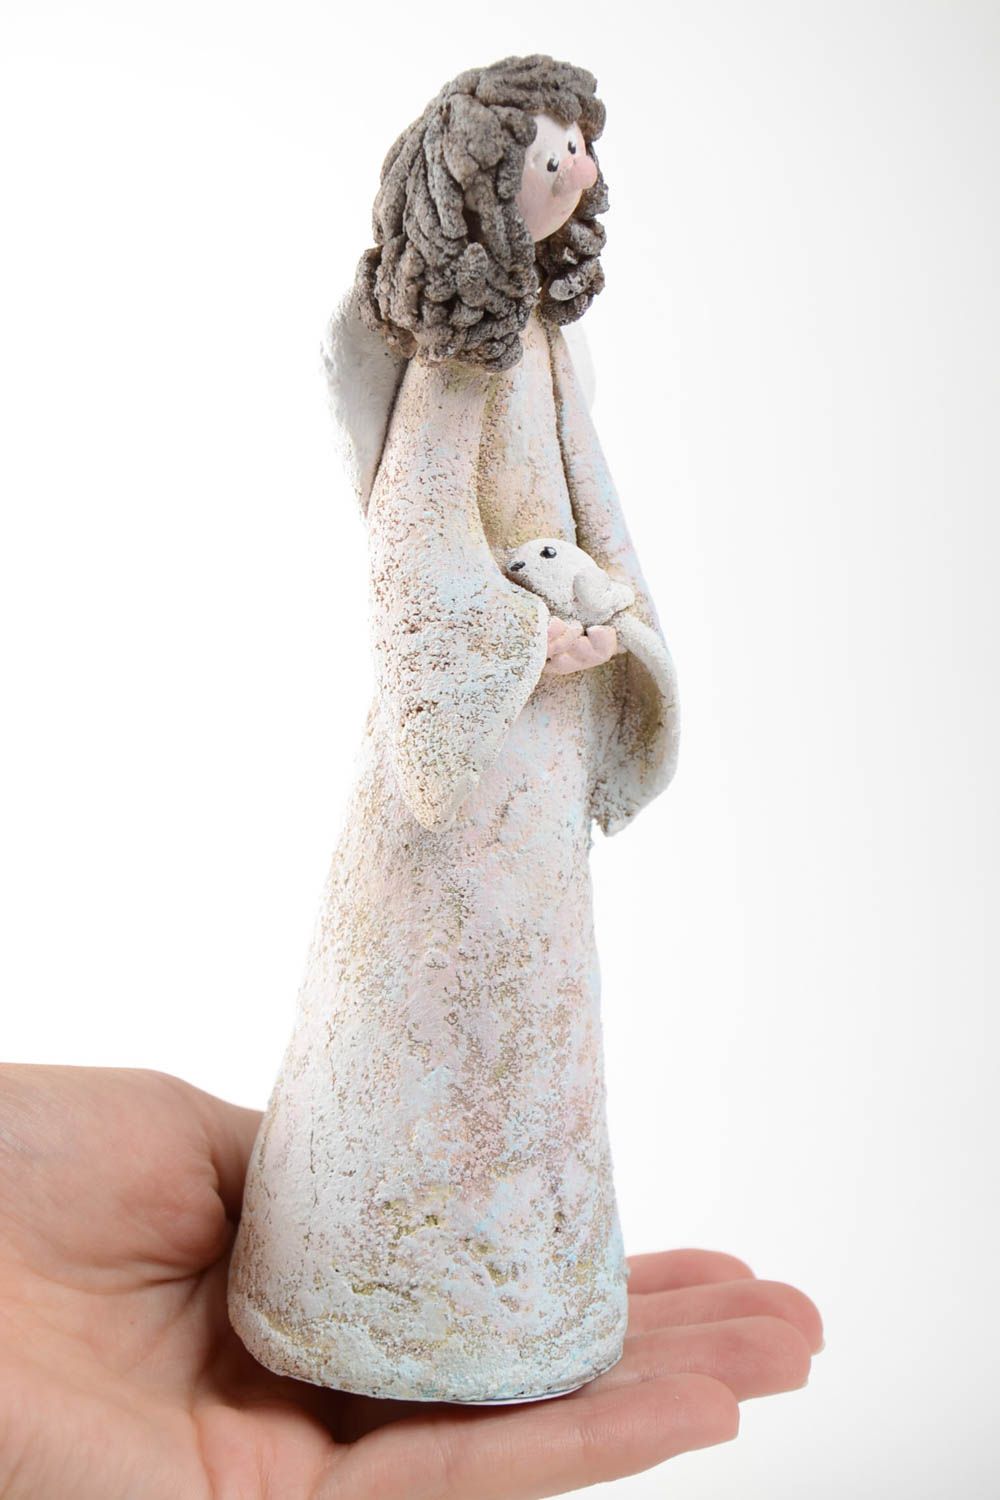 Статуэтка из самозастывающей глины ручной работы в виде ангела с птичкой фото 5